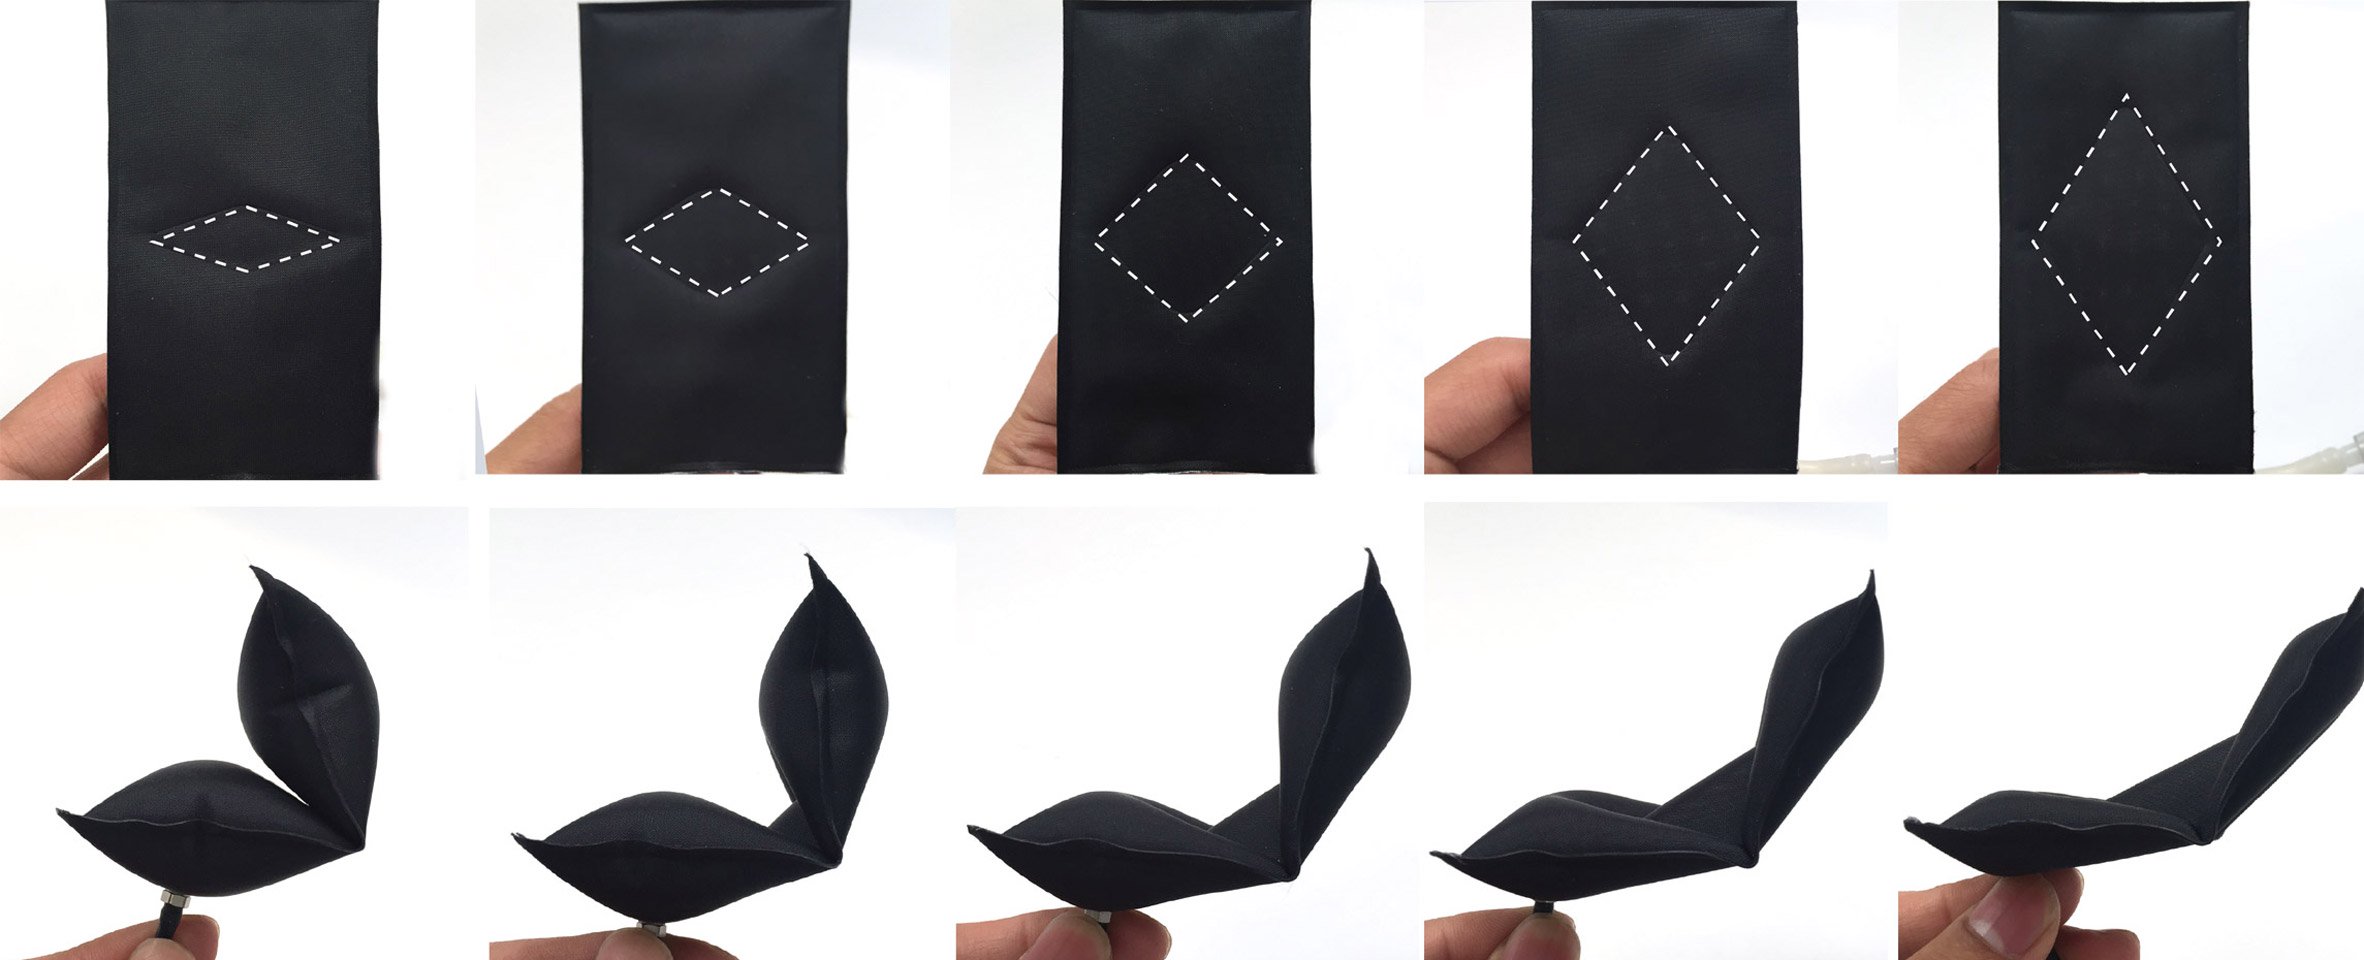 Colile aeromorfe gonflabile se autoîmpăturesc în figuri origami complexe